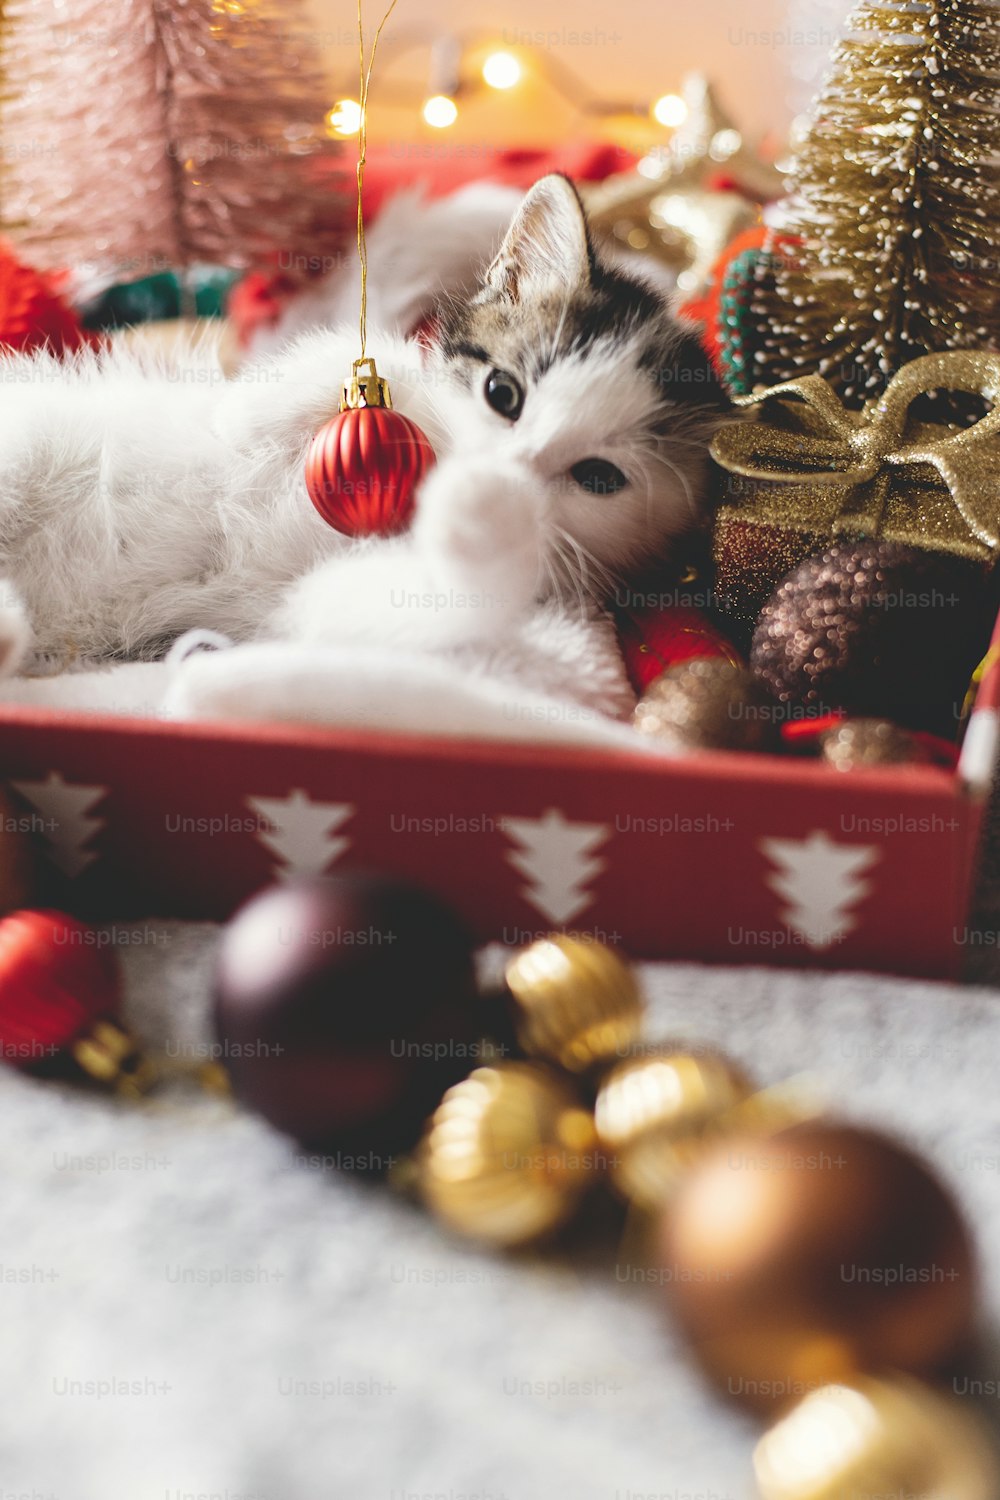 Süßes Kätzchen, das mit weihnachtlichen roten Kugeln spielt, in einer Kiste mit Weihnachtsmannmütze auf dem Hintergrund des Weihnachtsbaums liegt und Ornamente in warmen Lichtern leuchtet. Frohe Weihnachten und frohe Feiertage!